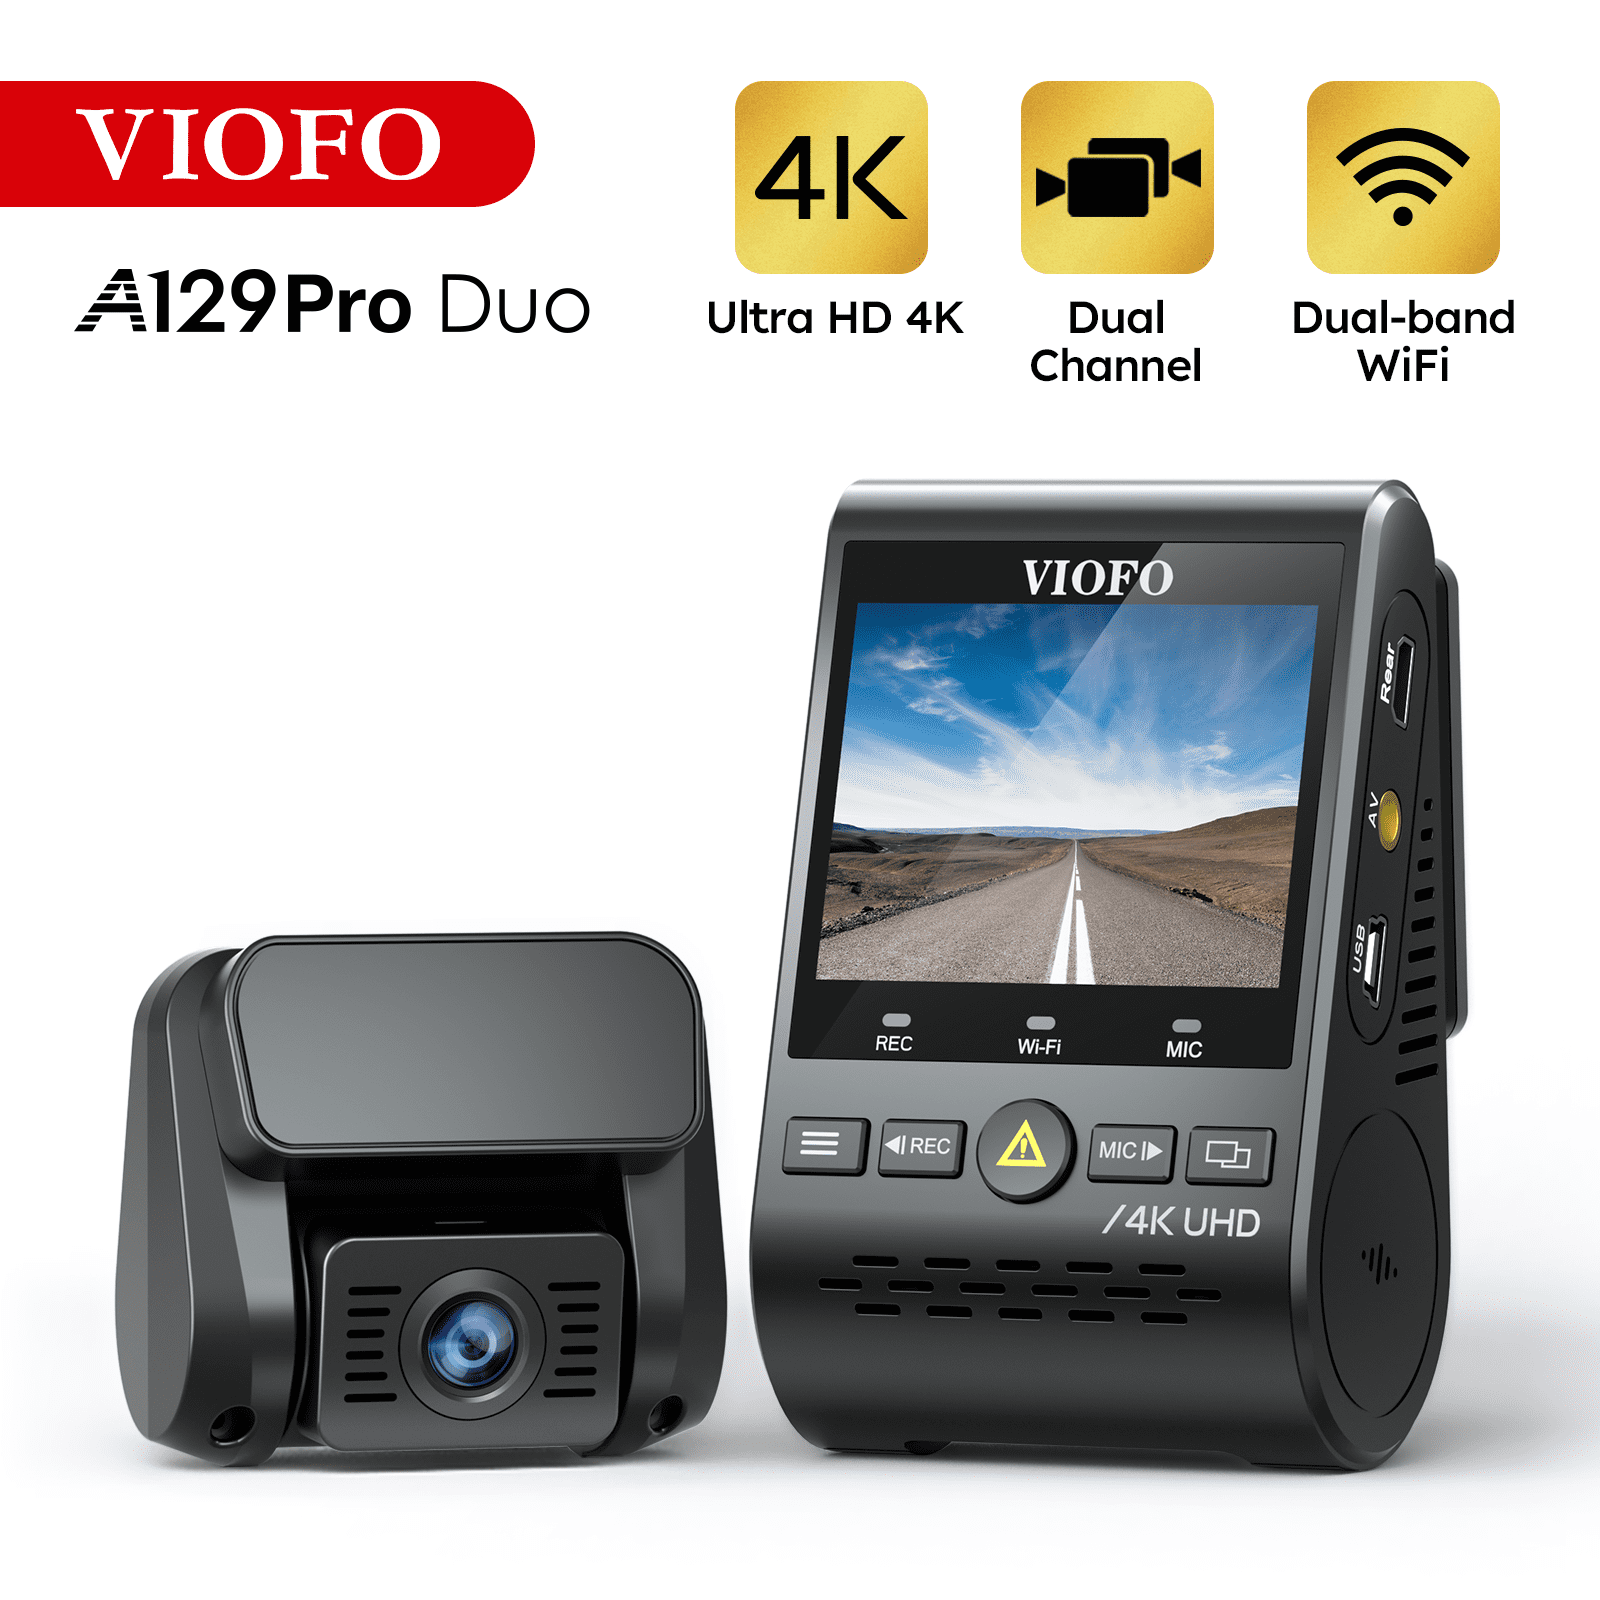 VIOFO 4K Dual Cam 3840 x 2160P Ultra HD 4K WiFi Dash Camera, Sony 8MP Sensor GPS, Parking Mode, Motion Detection, Pro Duo - Walmart.com